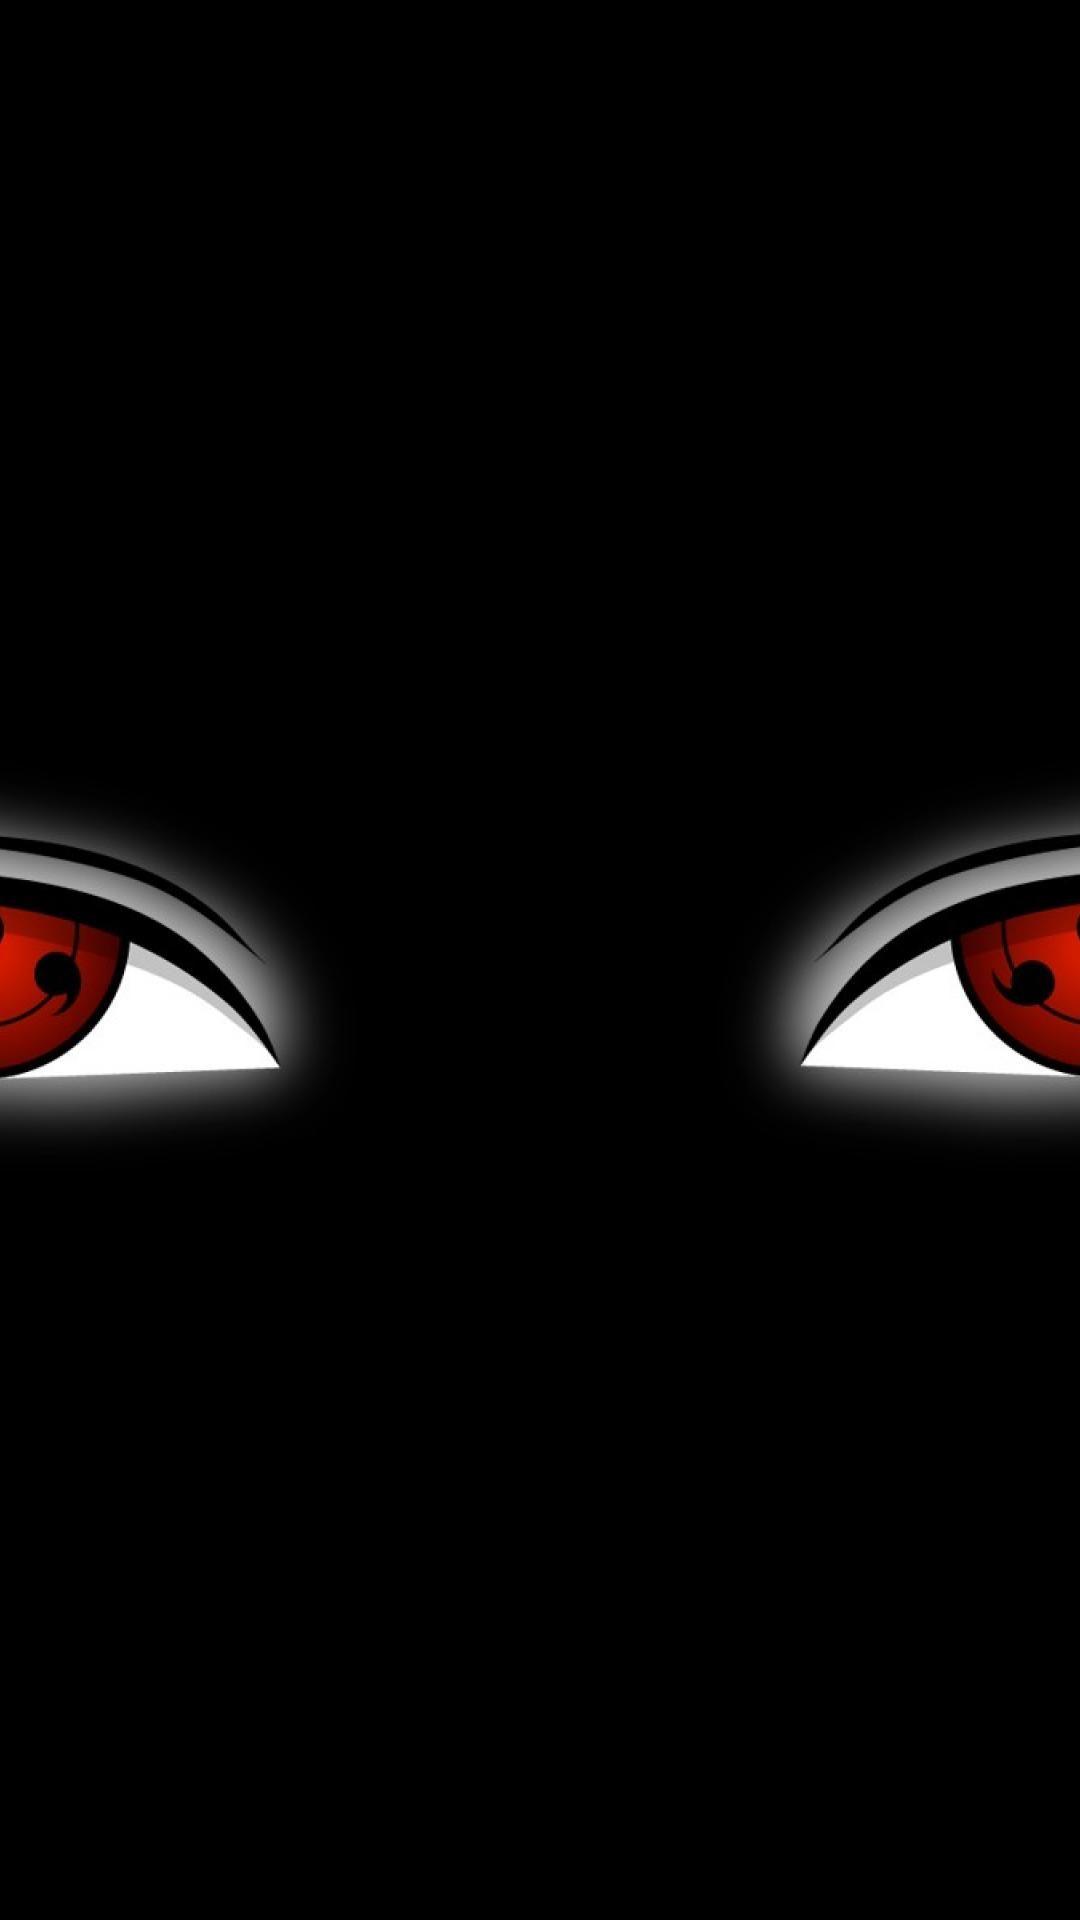 ScreenHeaven: Naruto: Shippuden Sharingan Uchiha Itachi eyes desktop